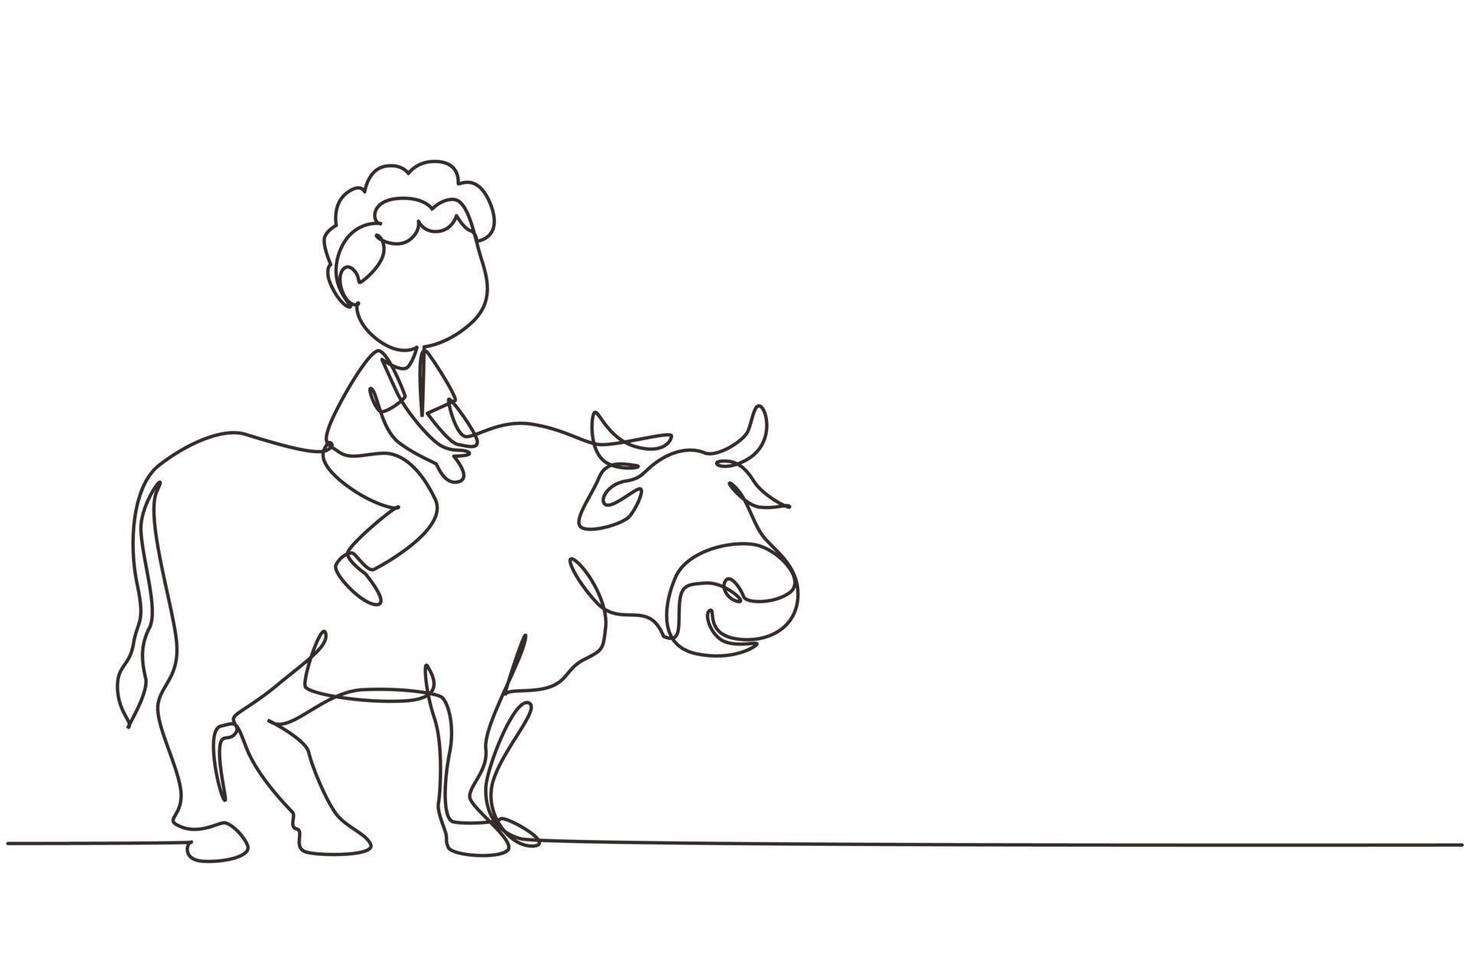 durchgehende einzeilige zeichnung glücklicher kleiner junge, der kuh reitet. Fröhliches Kind, das auf der hinteren Kuh mit Sattel im Ranchboden sitzt. Kinder lernen, Kuh zu reiten. einzeiliges zeichnen design vektorgrafik illustration vektor